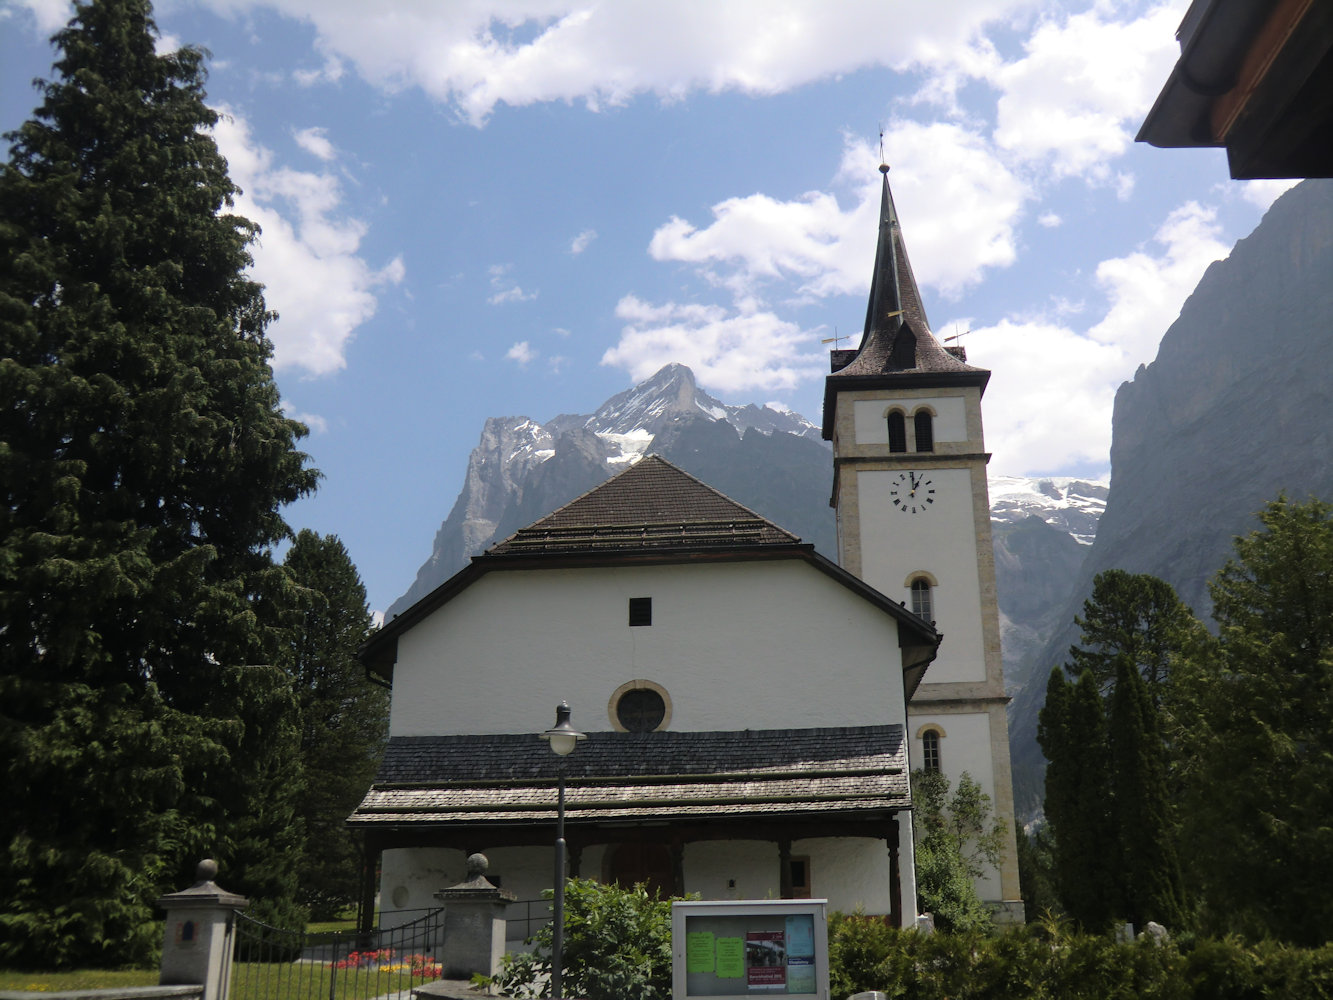 heutige Kirche im Bergdorf Grindelwald vor dem Wetterhorn